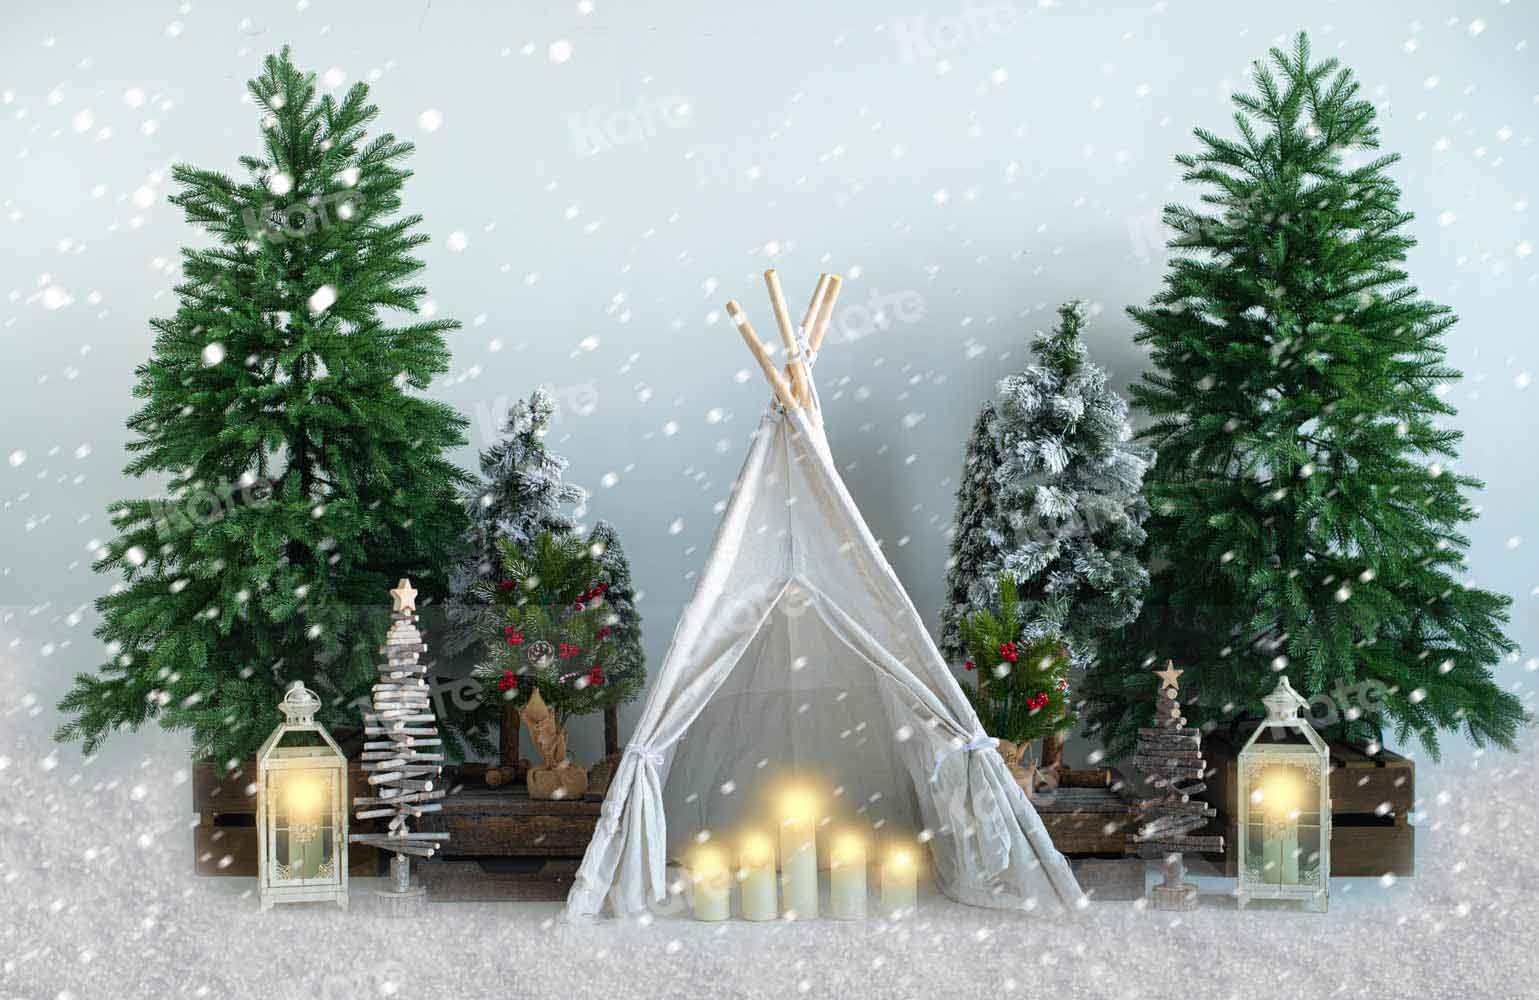 Kate Weihnachten Schnee Zelt Hintergrund  von Emetselch